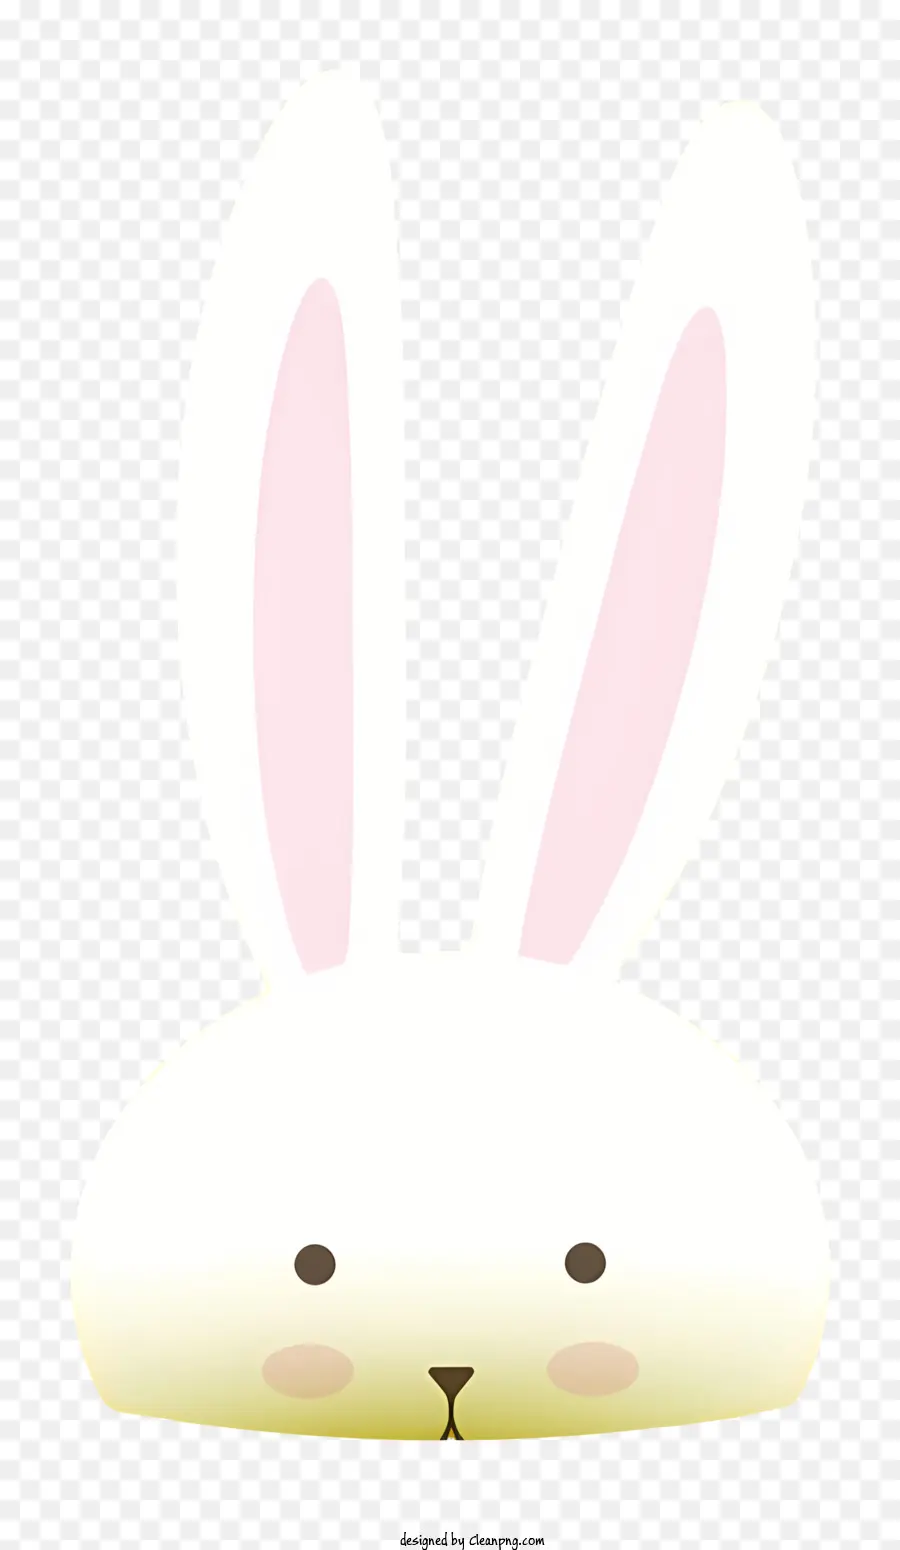 viso coniglietto occhi rosa di coniglio bianchi in piedi sulle zampe posteriori rianimato - Coniglio bianco con occhi rosa, in piedi in allerta